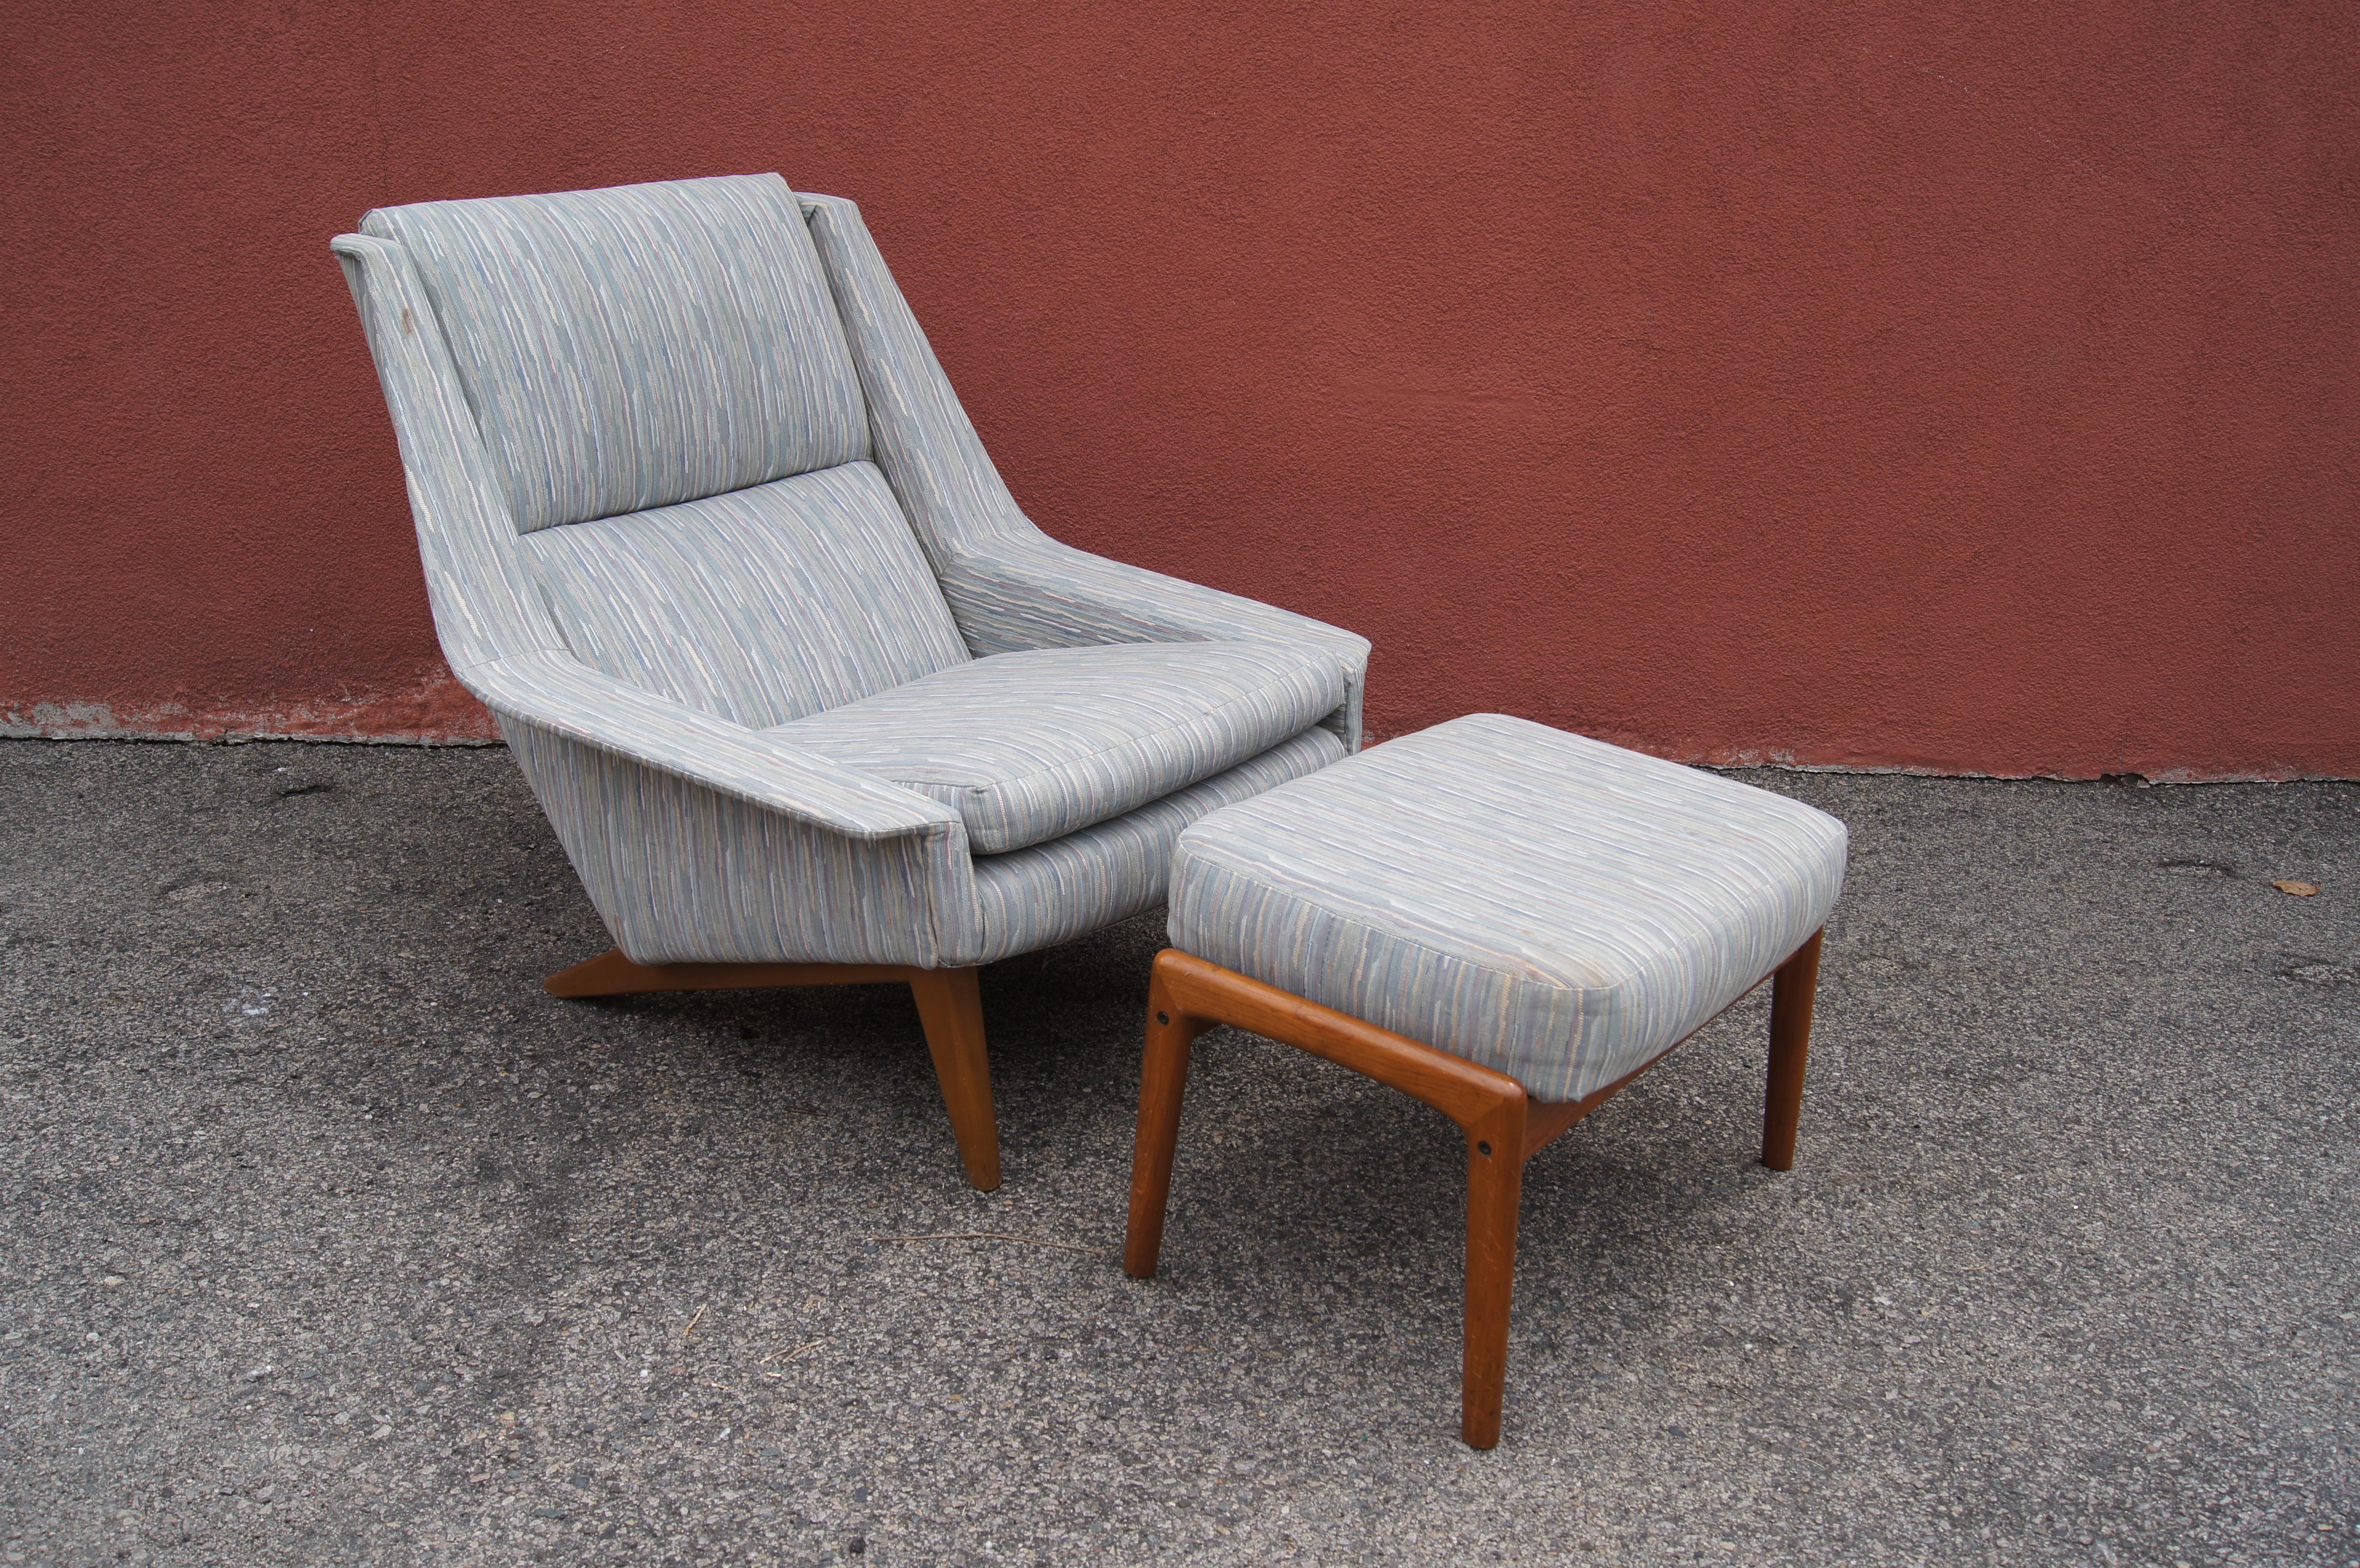 Der schwedische Designer Folke Ohlsson entwarf 1957 für den dänischen Hersteller Fritz Hansen diesen markanten Loungesessel, Modell 4410, mit Ottomane. Der breite, kantige Rahmen des Stuhls schafft einen tiefen Sitzkomfort mit einer geneigten